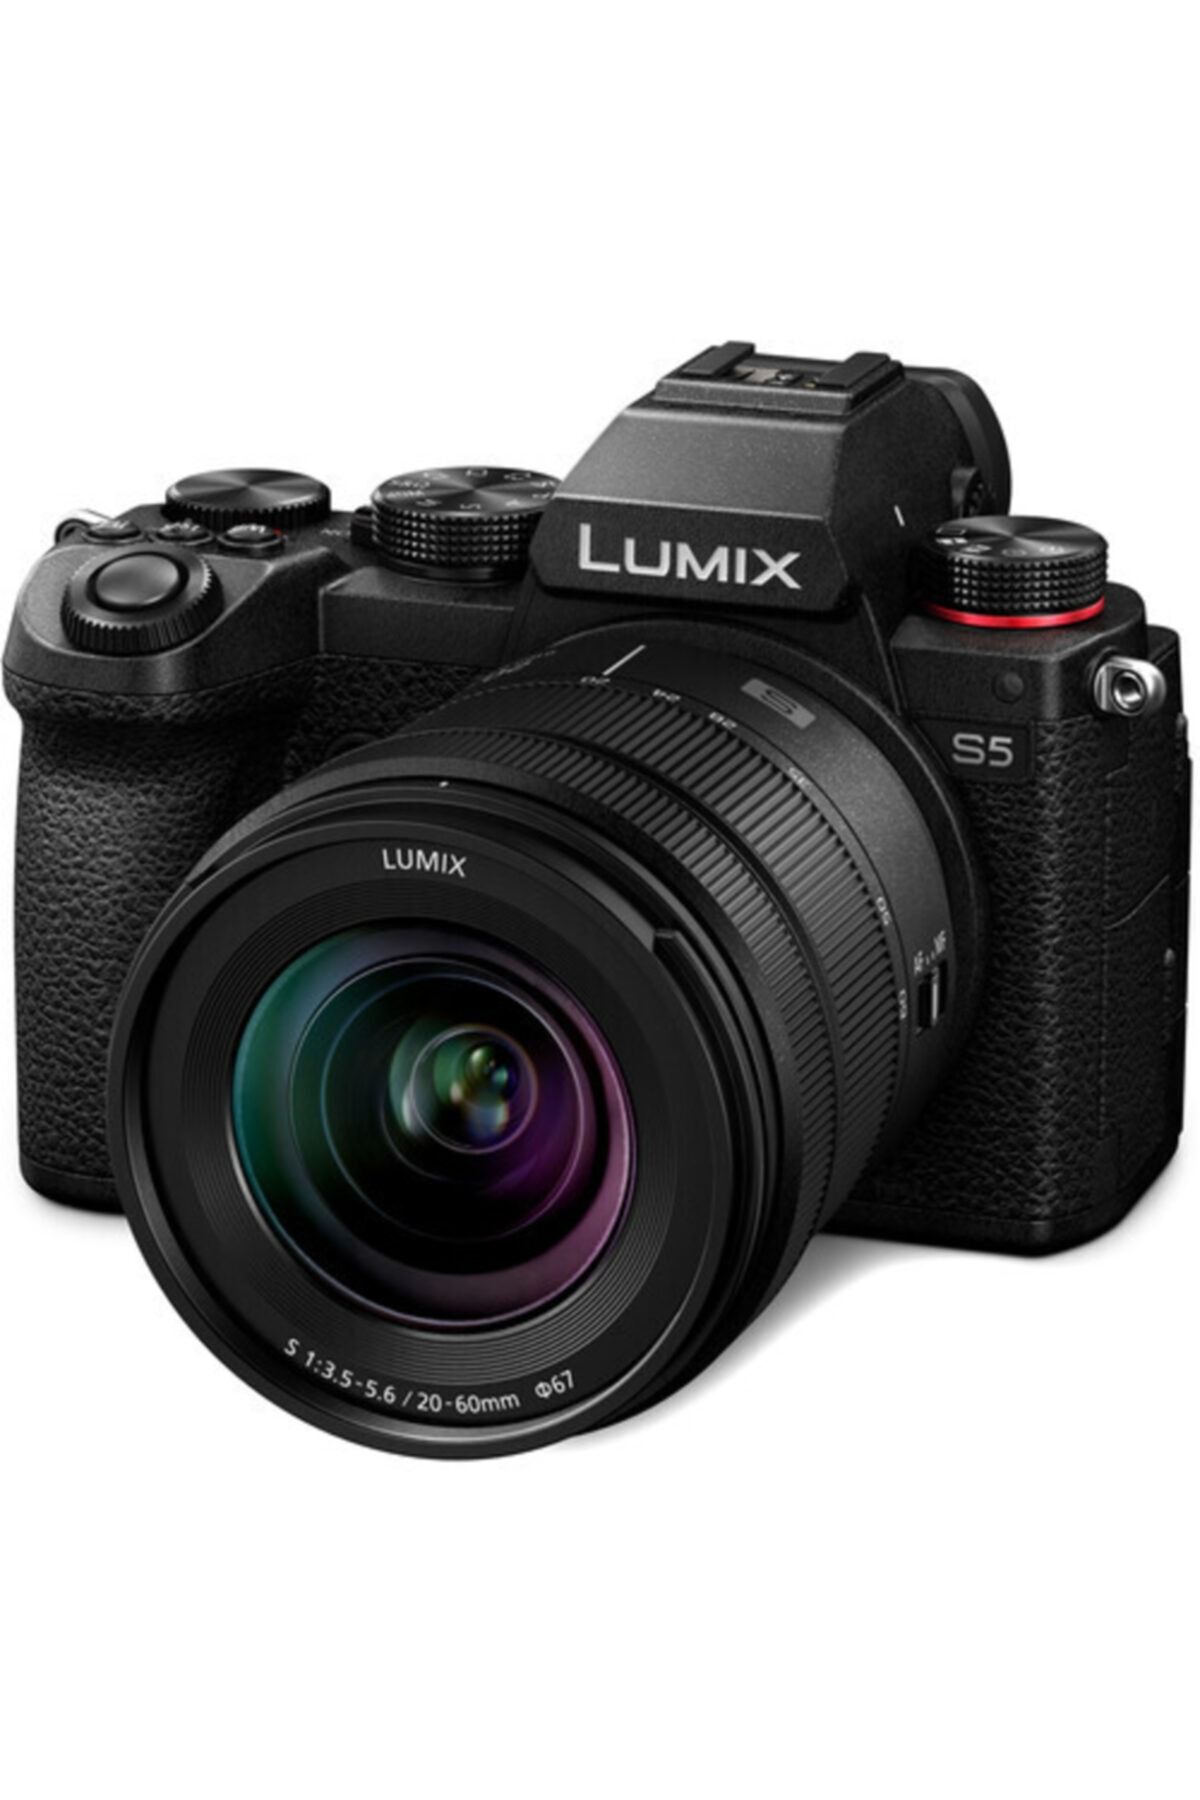 Panasonic Lumix Dc-s5 20-60mm Lens Kit